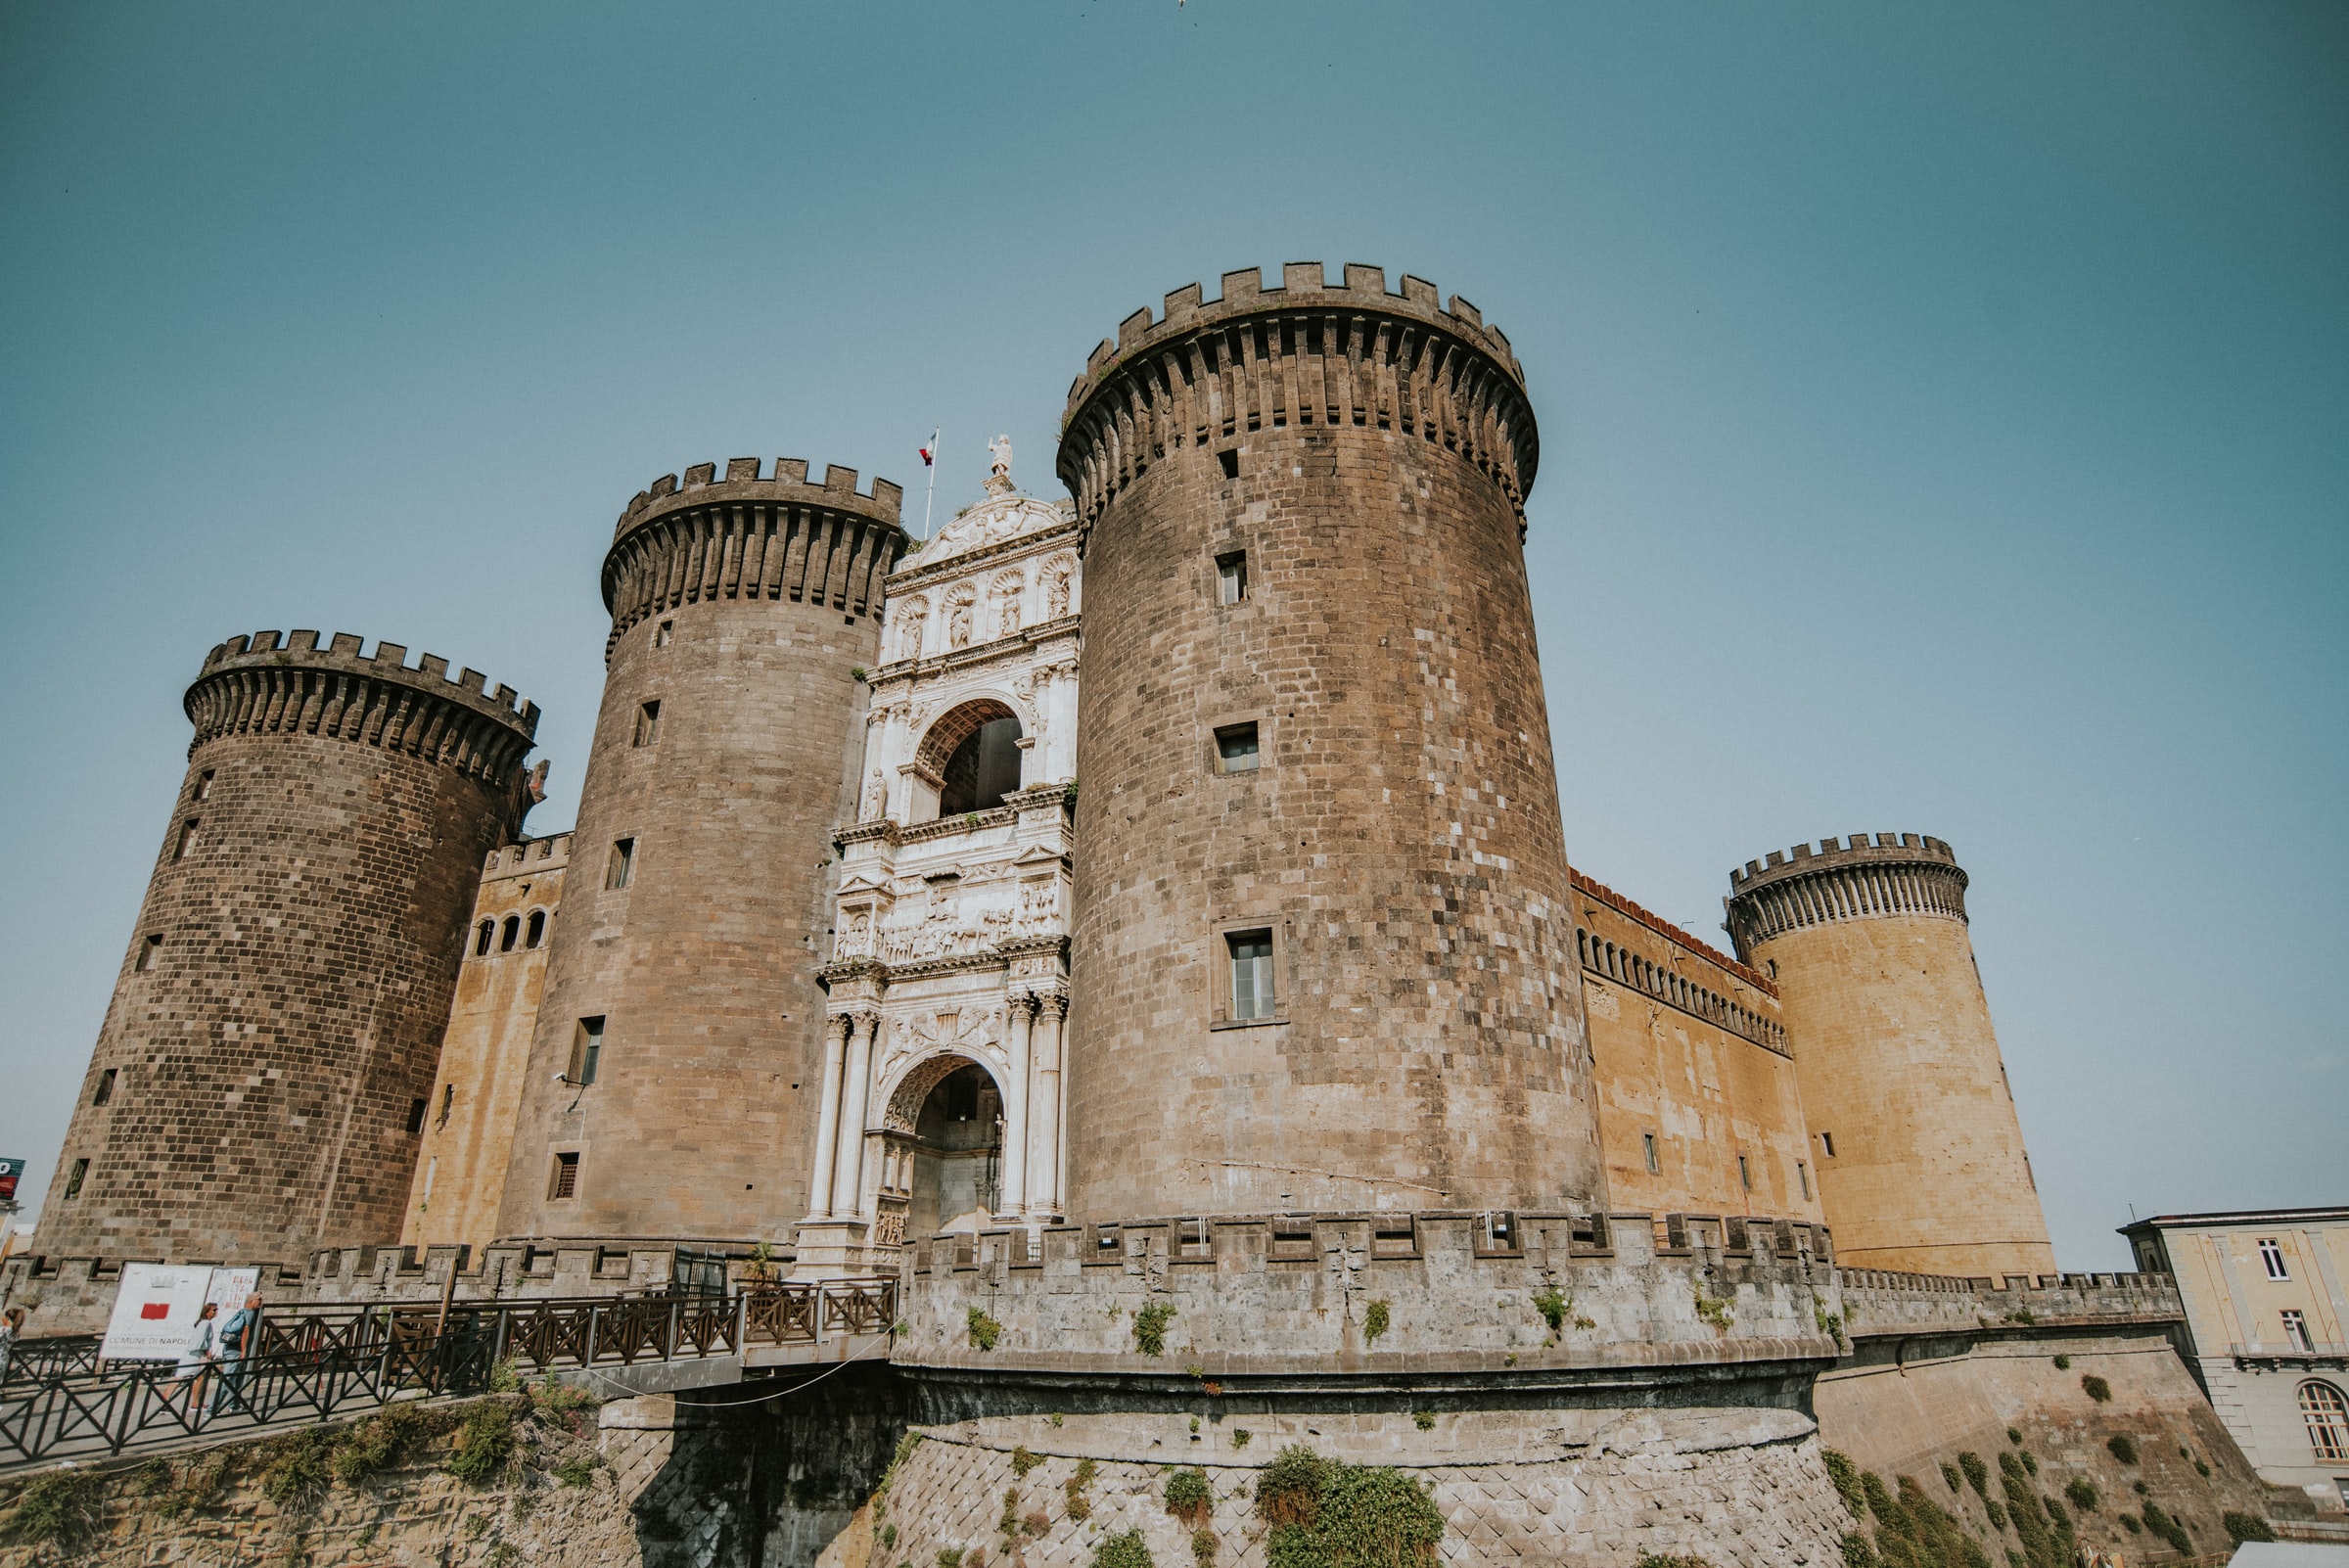 Castel dell’Ovo, Naples. Un palimpseste de l’histoire de la ville.
Crédits: Unsplashed